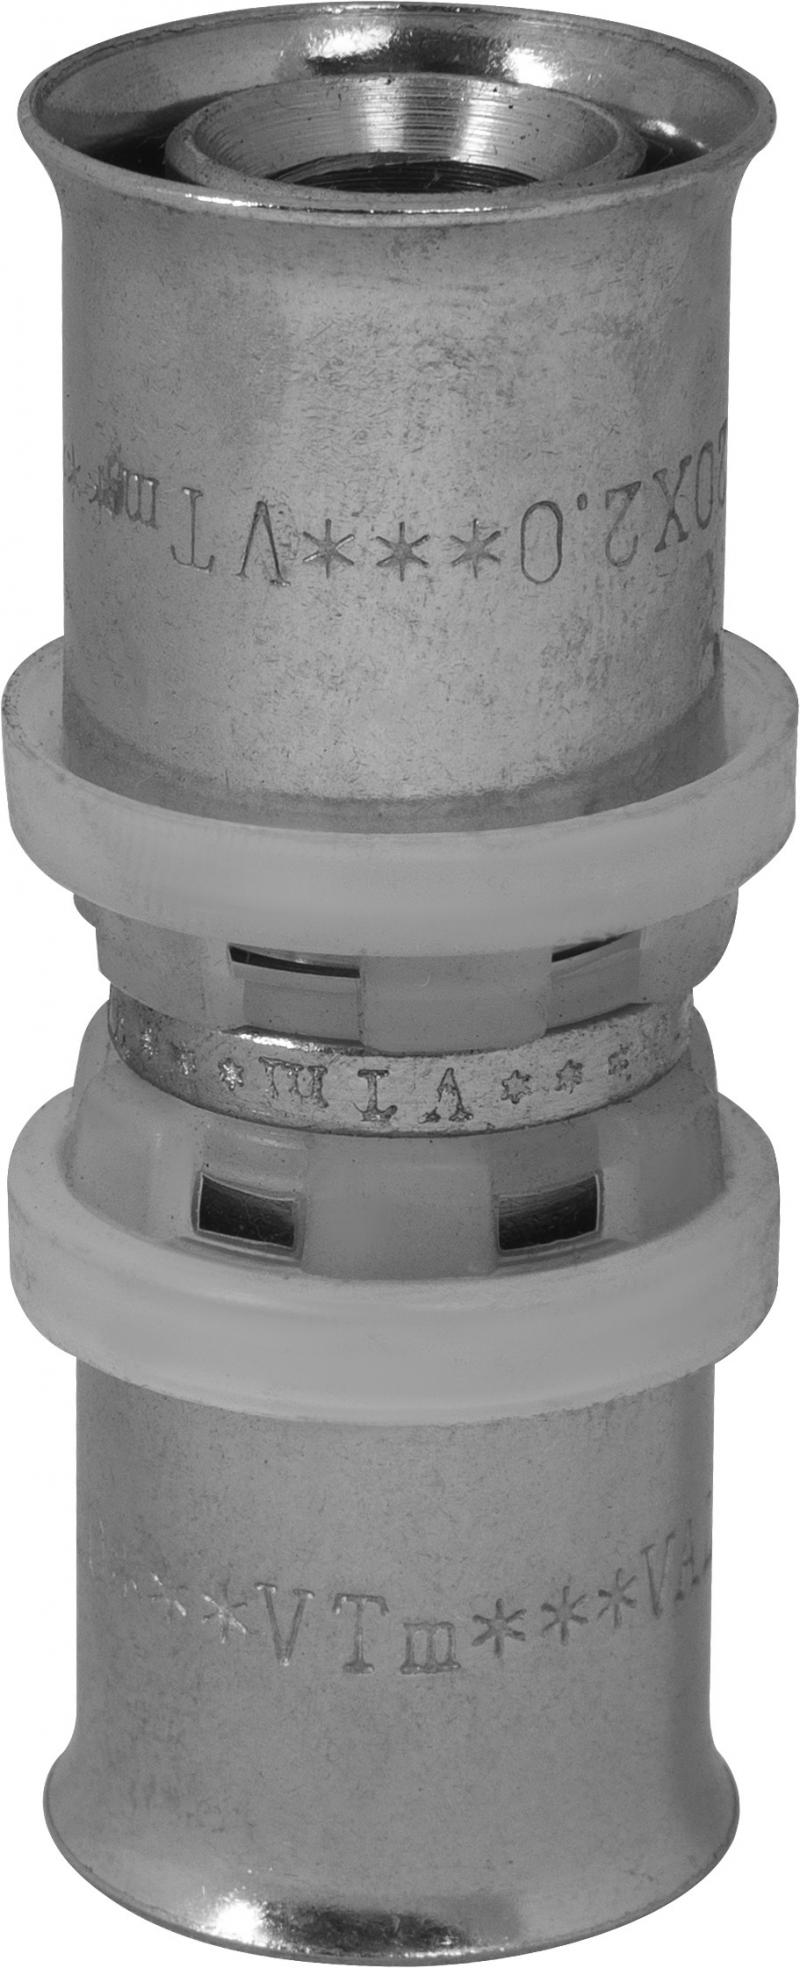 Соединитель пресс Valtec 20x20 мм никелированная латунь VTm.203.N.002020